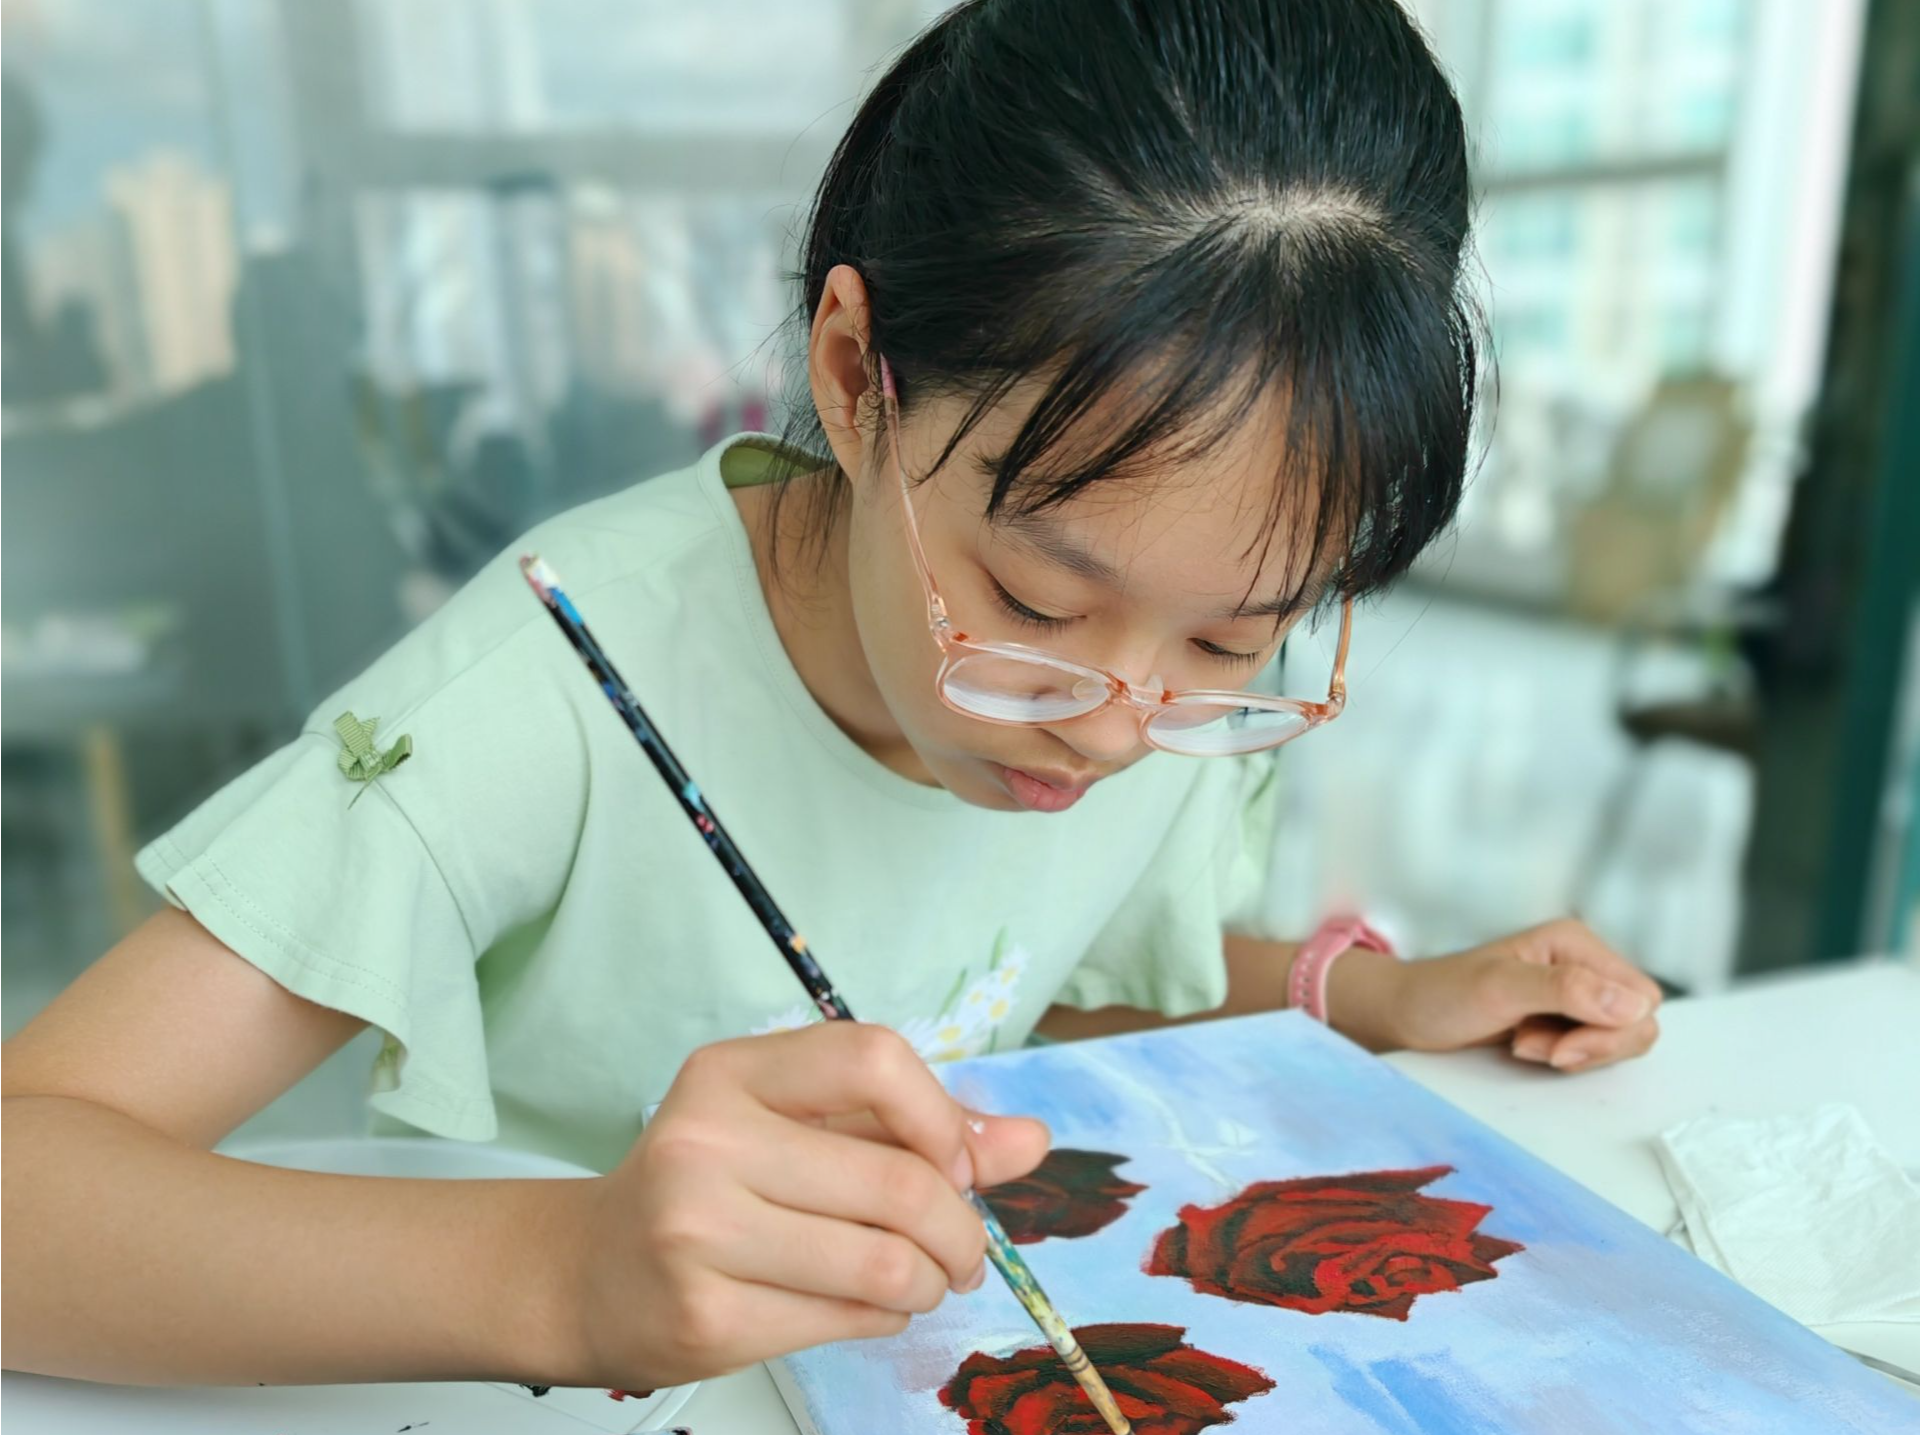 益强小学学生绘画作品获国际奖项  在国际赛事中展示深圳青少年素质教育风采